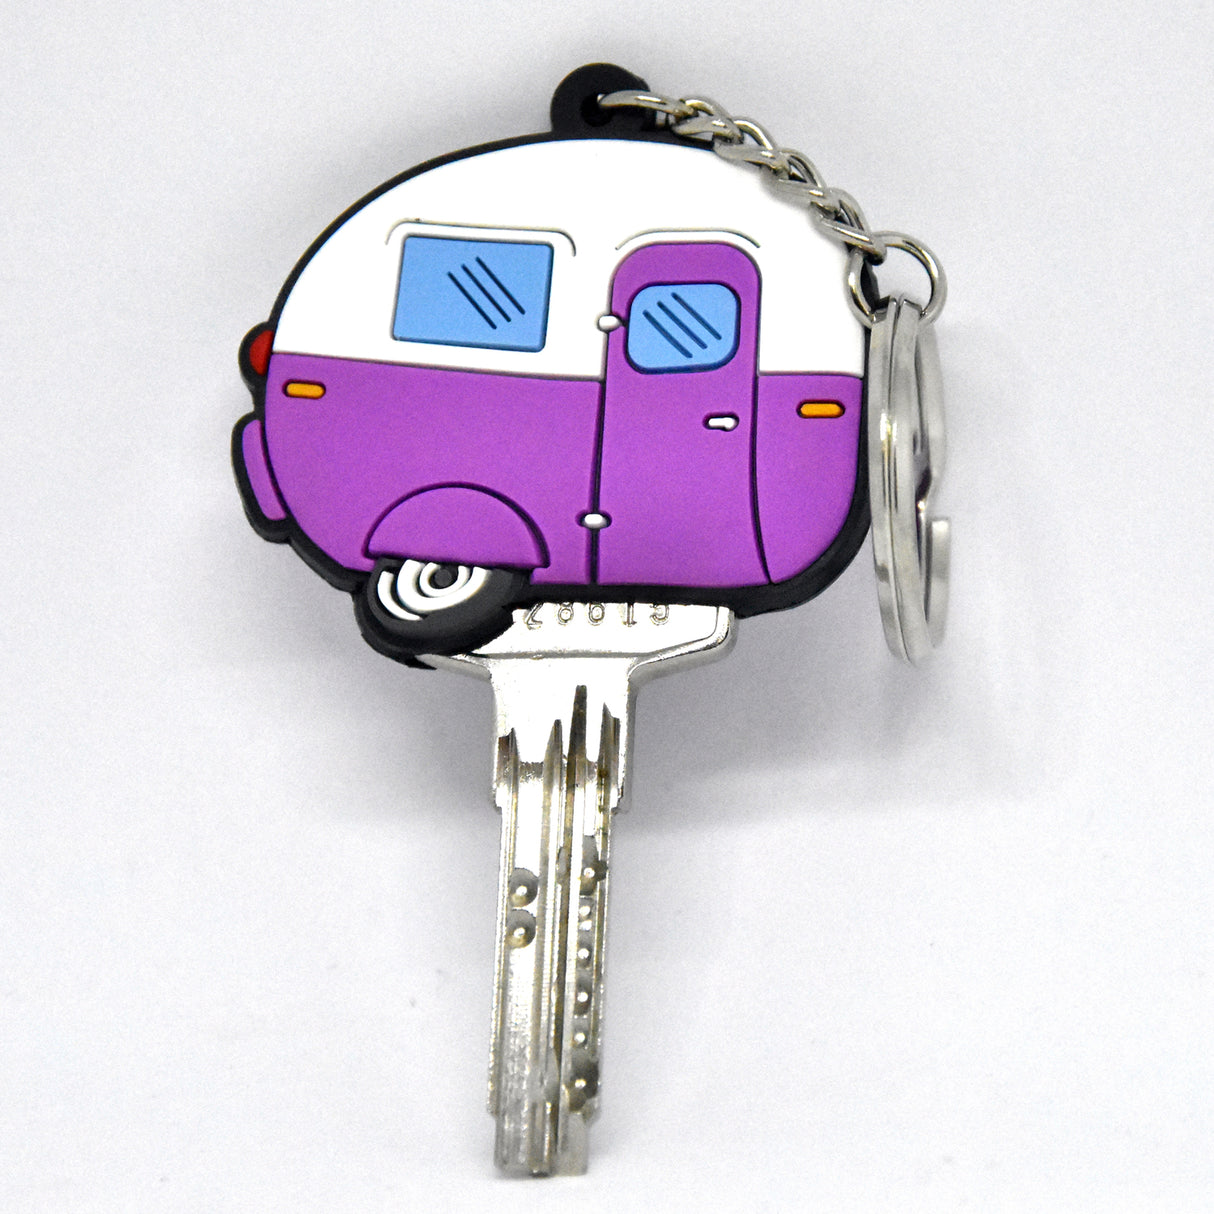 Wohnwagen Schlüsselkappe in lila  Jetzt kaufen und sparen! –